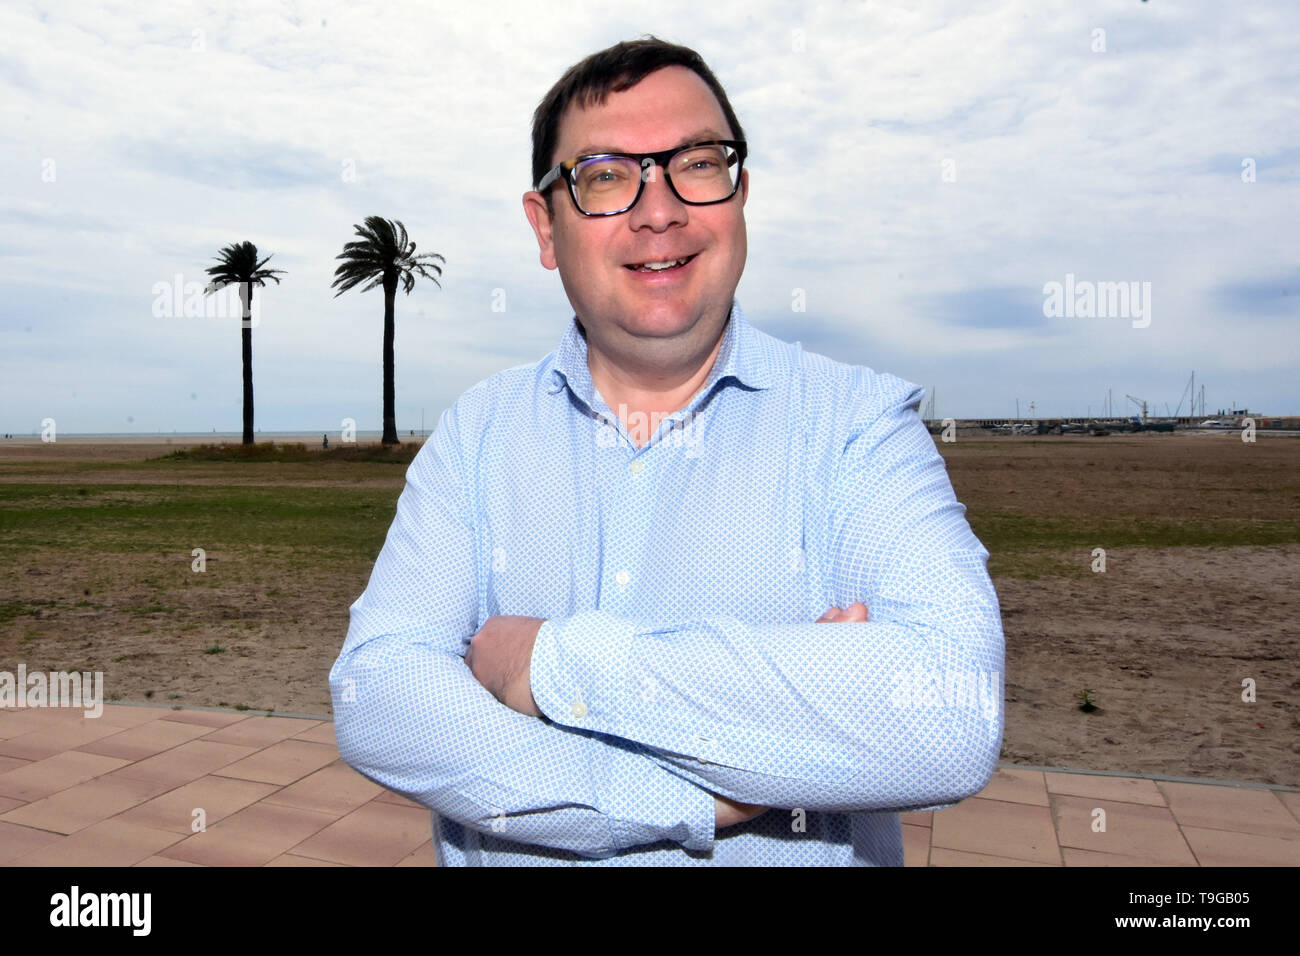 Joan Maria Diu, candidato dal gruppo politico "Convergents' per il sindaco di El Vendrell Tarragona, Spagna. Foto Stock